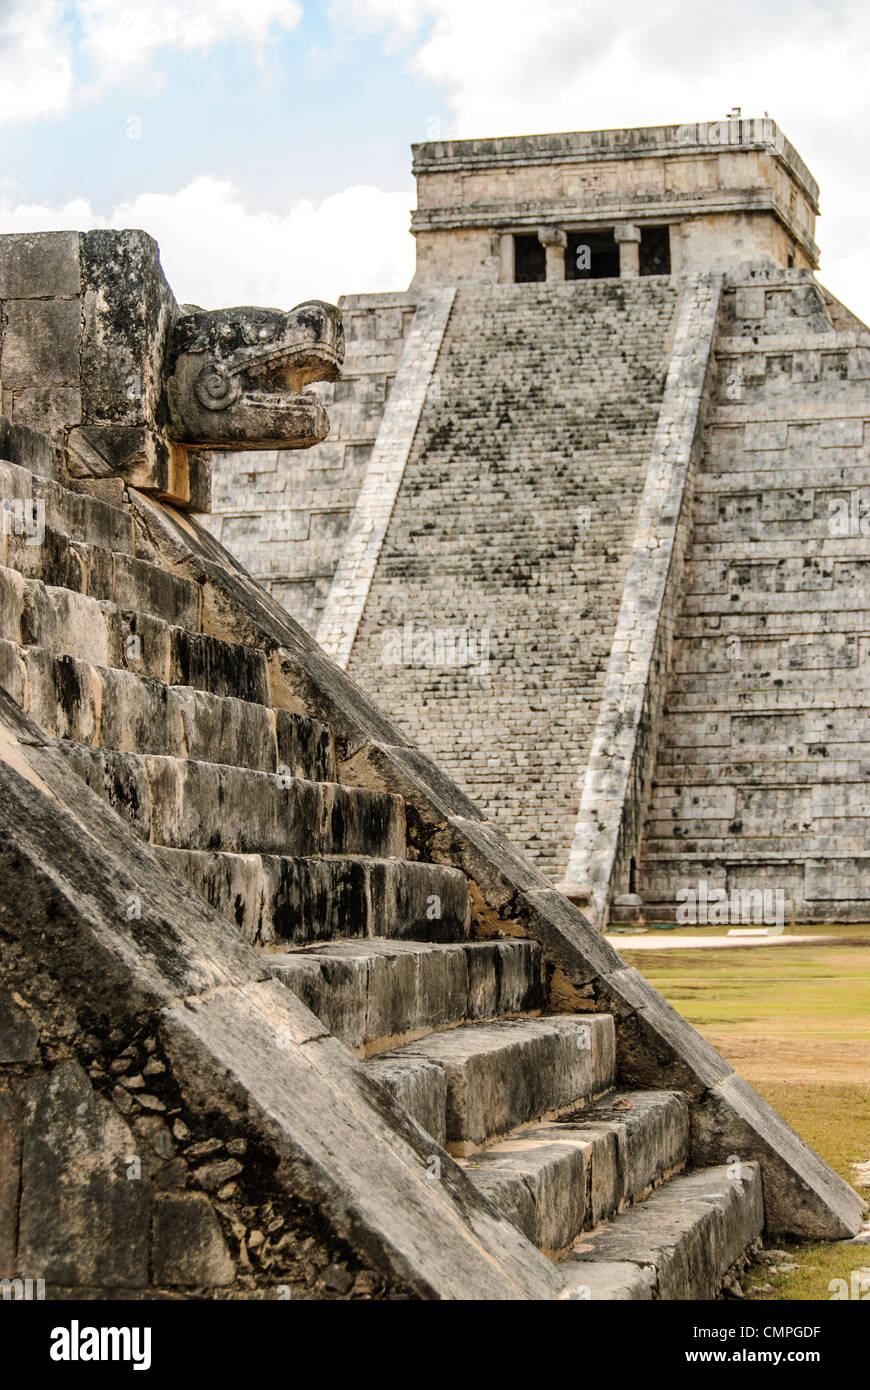 CHICHEN ITZA, Mexique - En arrière plan à droite se trouve le Temple de Kukulkan (El Castillo) et à gauche au premier plan sont le jaguar sculpté généraux et étapes de la plate-forme de Vénus à la Zone archéologique de Chichen Itza, les ruines d'une importante ville de la civilisation Maya au coeur de la péninsule du Yucatan au Mexique. Banque D'Images